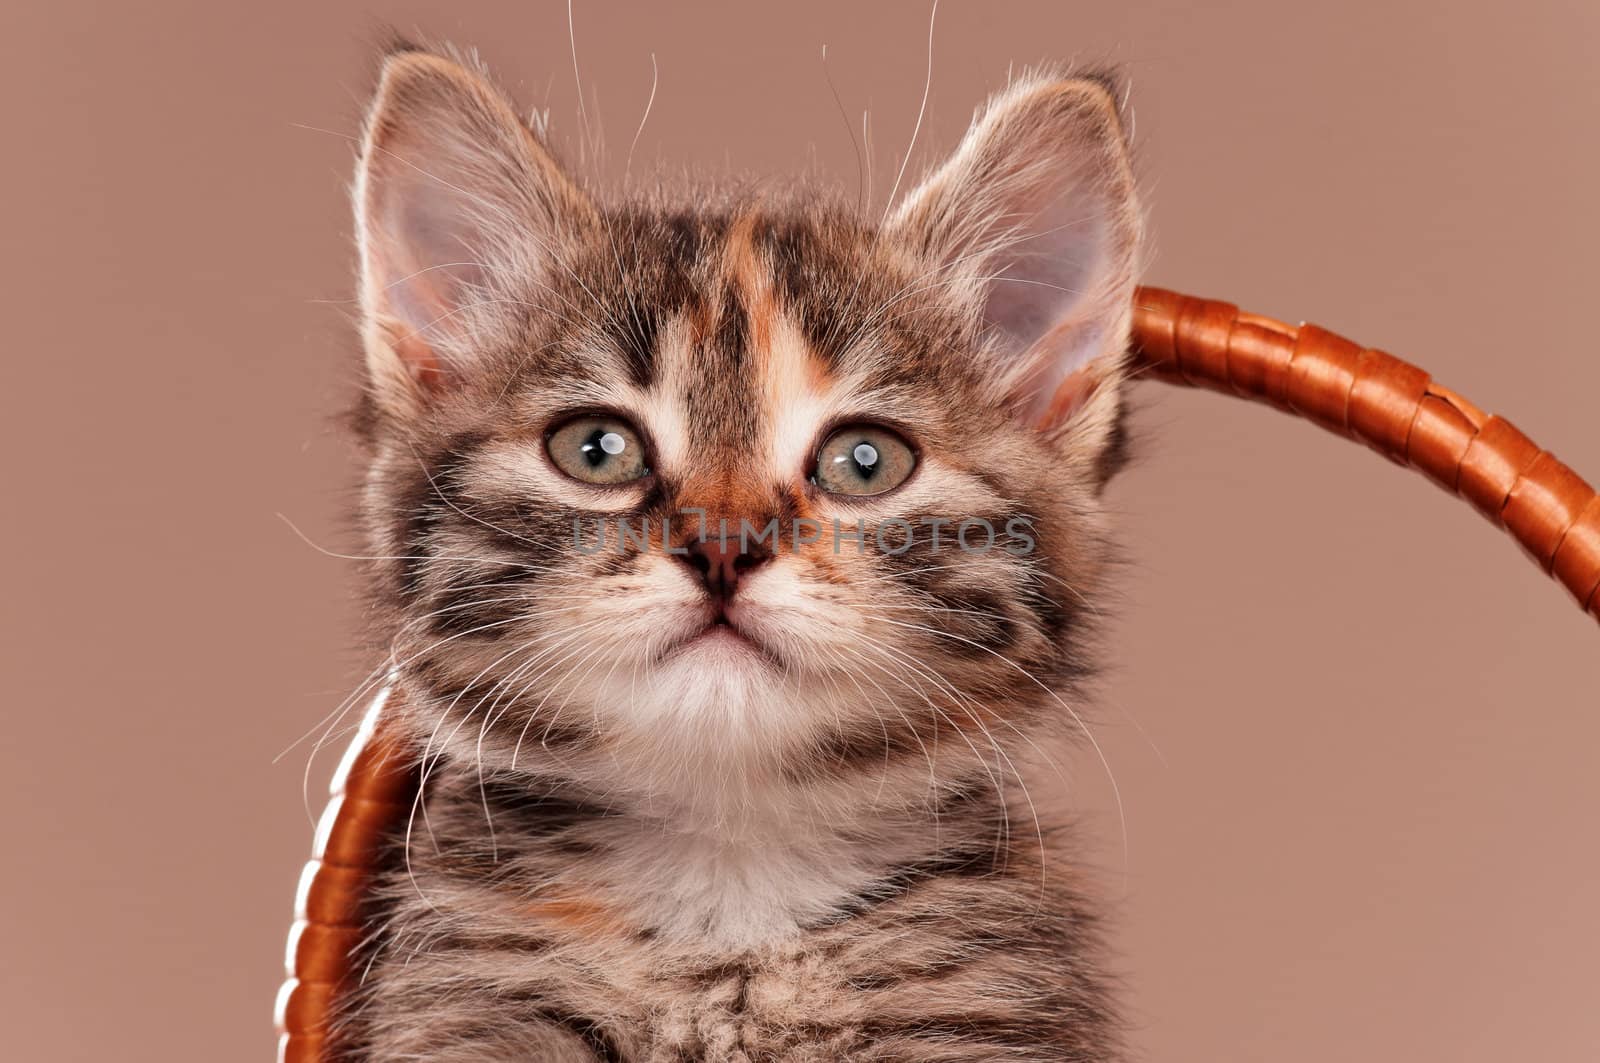 Cute kitten by fotostok_pdv